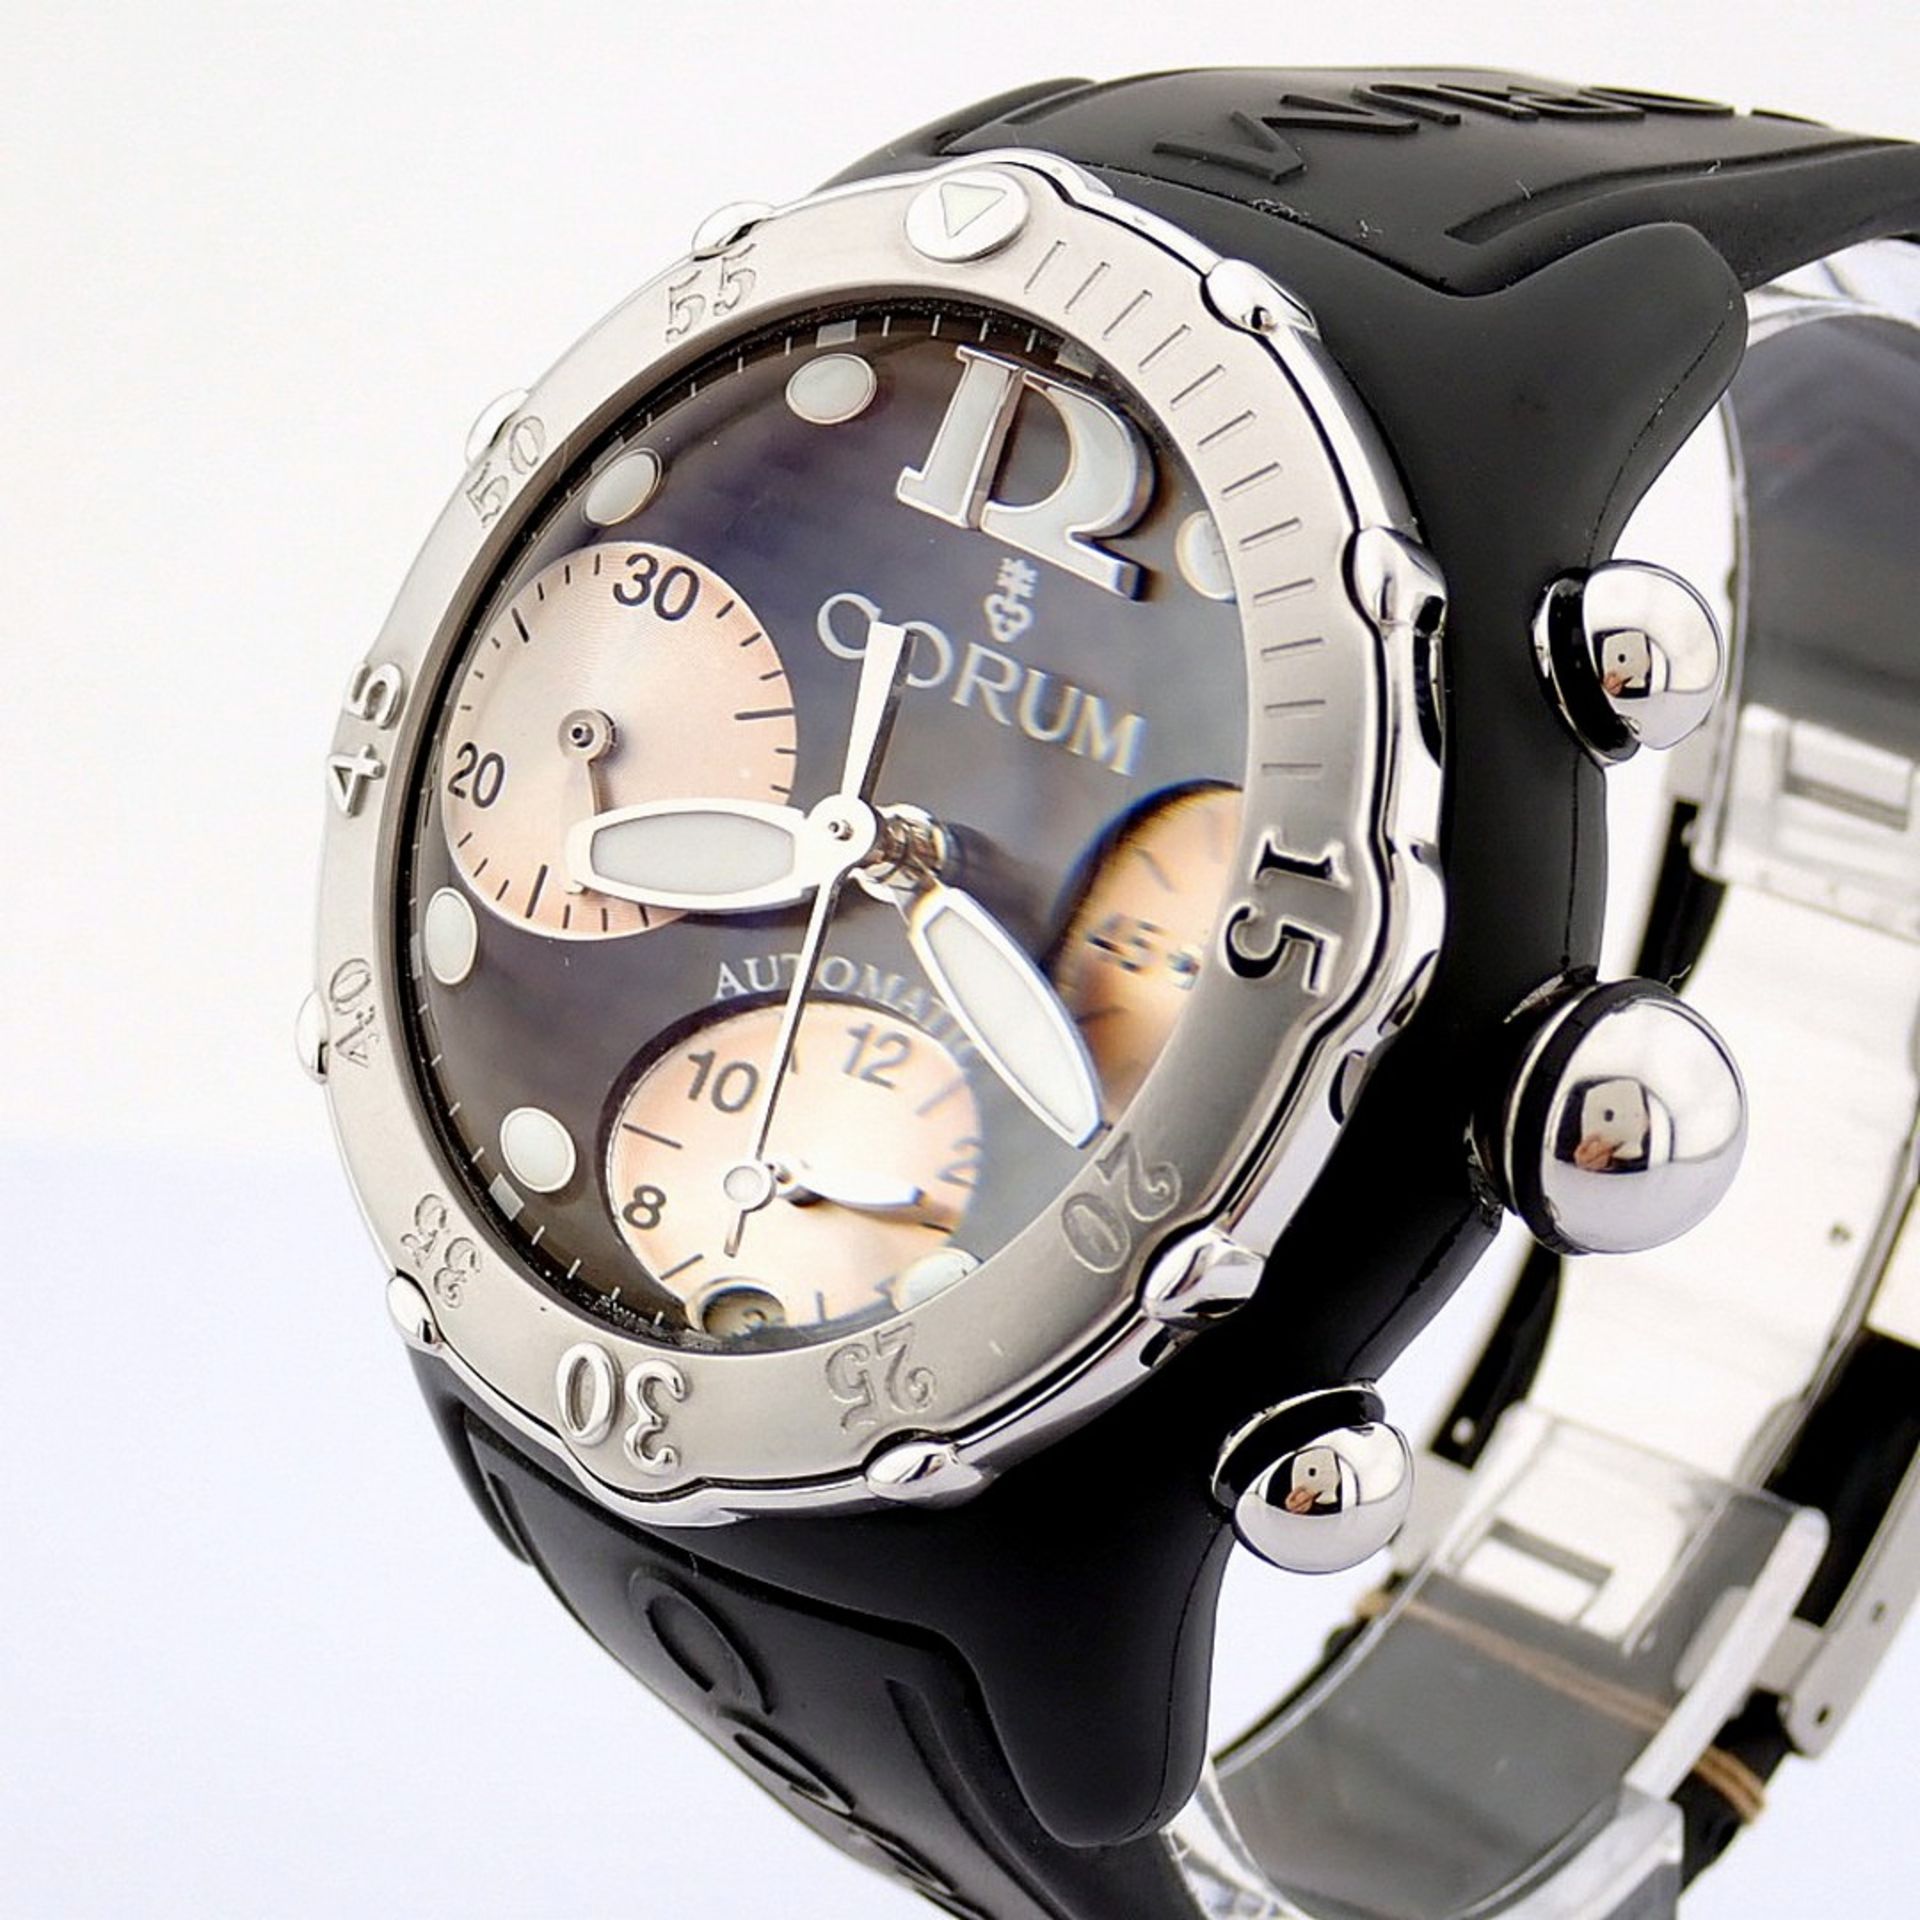 Corum / Midnight Chronograph Diver Taucher - Gentlemen's Steel Wristwatch - Image 9 of 12